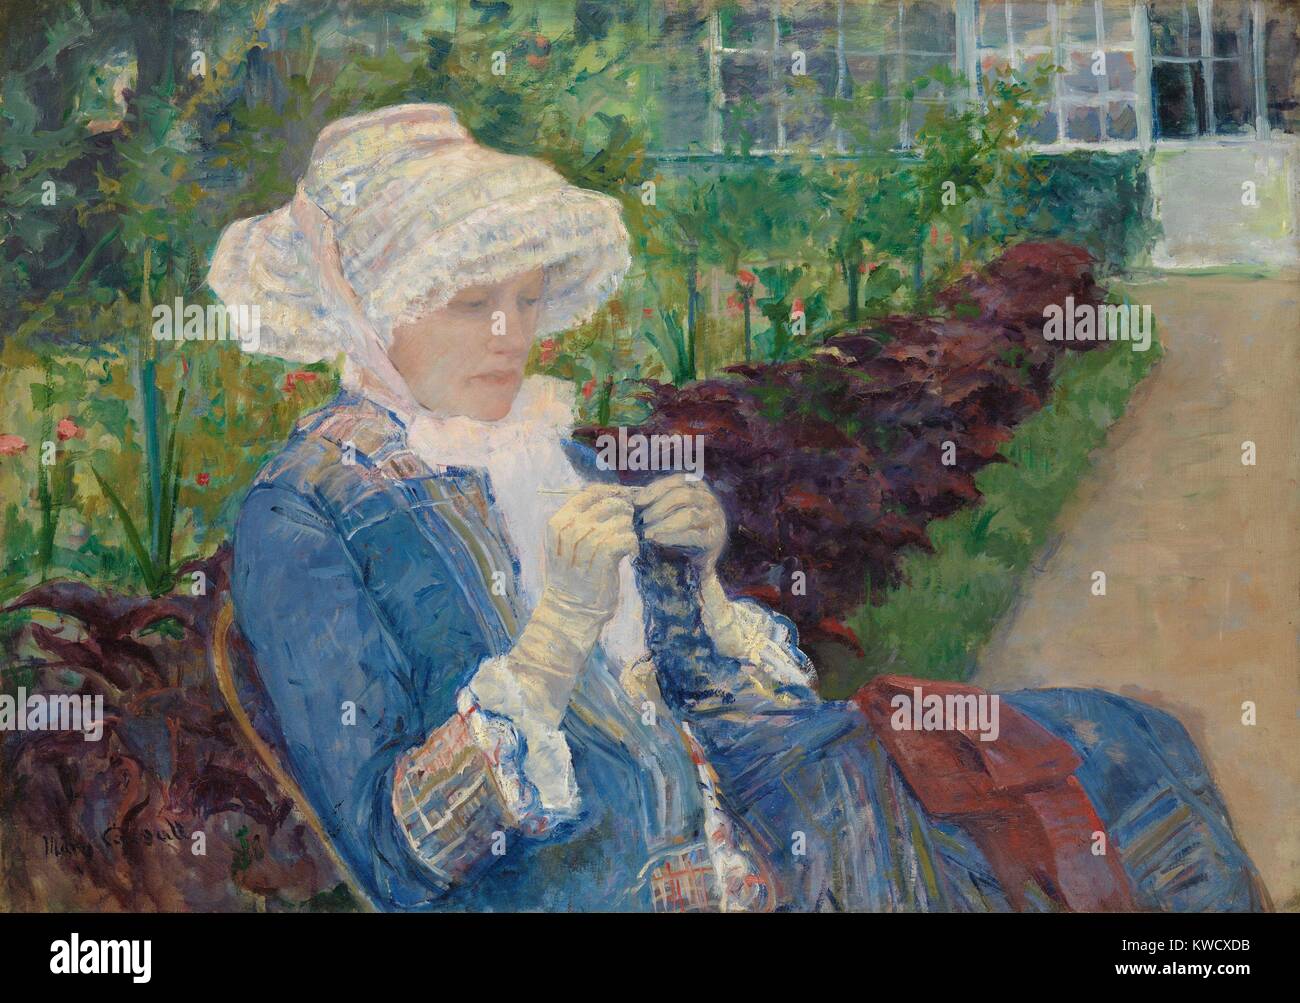 Lydia le crochet dans le jardin de Marly, par Mary Cassatt, 1880, peinture à l'huile impressionniste. Cassatts a peint sa sœur Lydia à Marly-le-Roi, un village à l'extérieur de Paris (BSLOC 2017 3 143) Banque D'Images